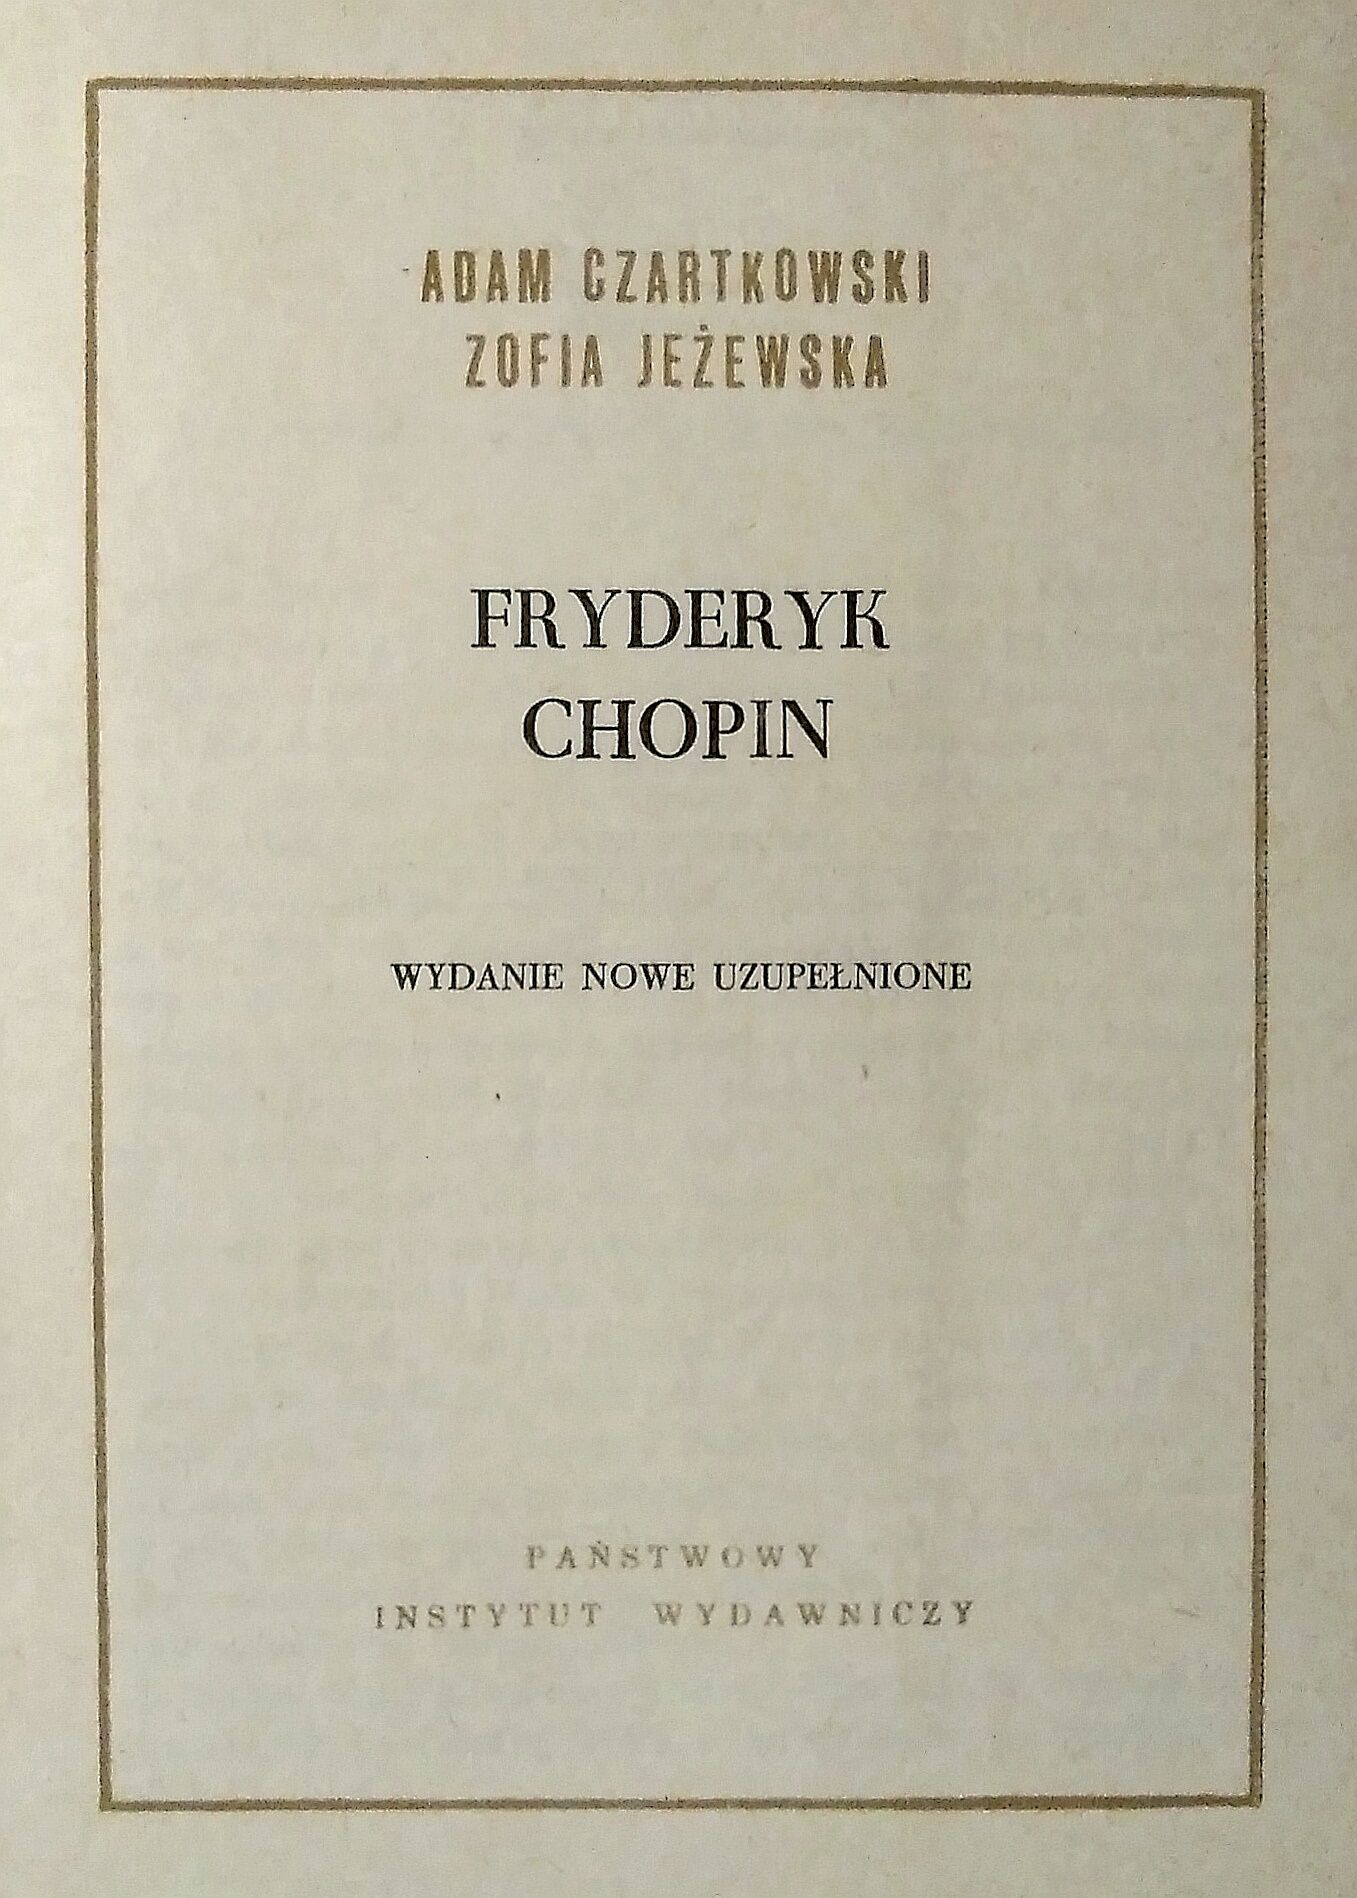 Fryderyk Chopin, Seria "Ludzie Żywi", Tom 12, PIW 1970 r.